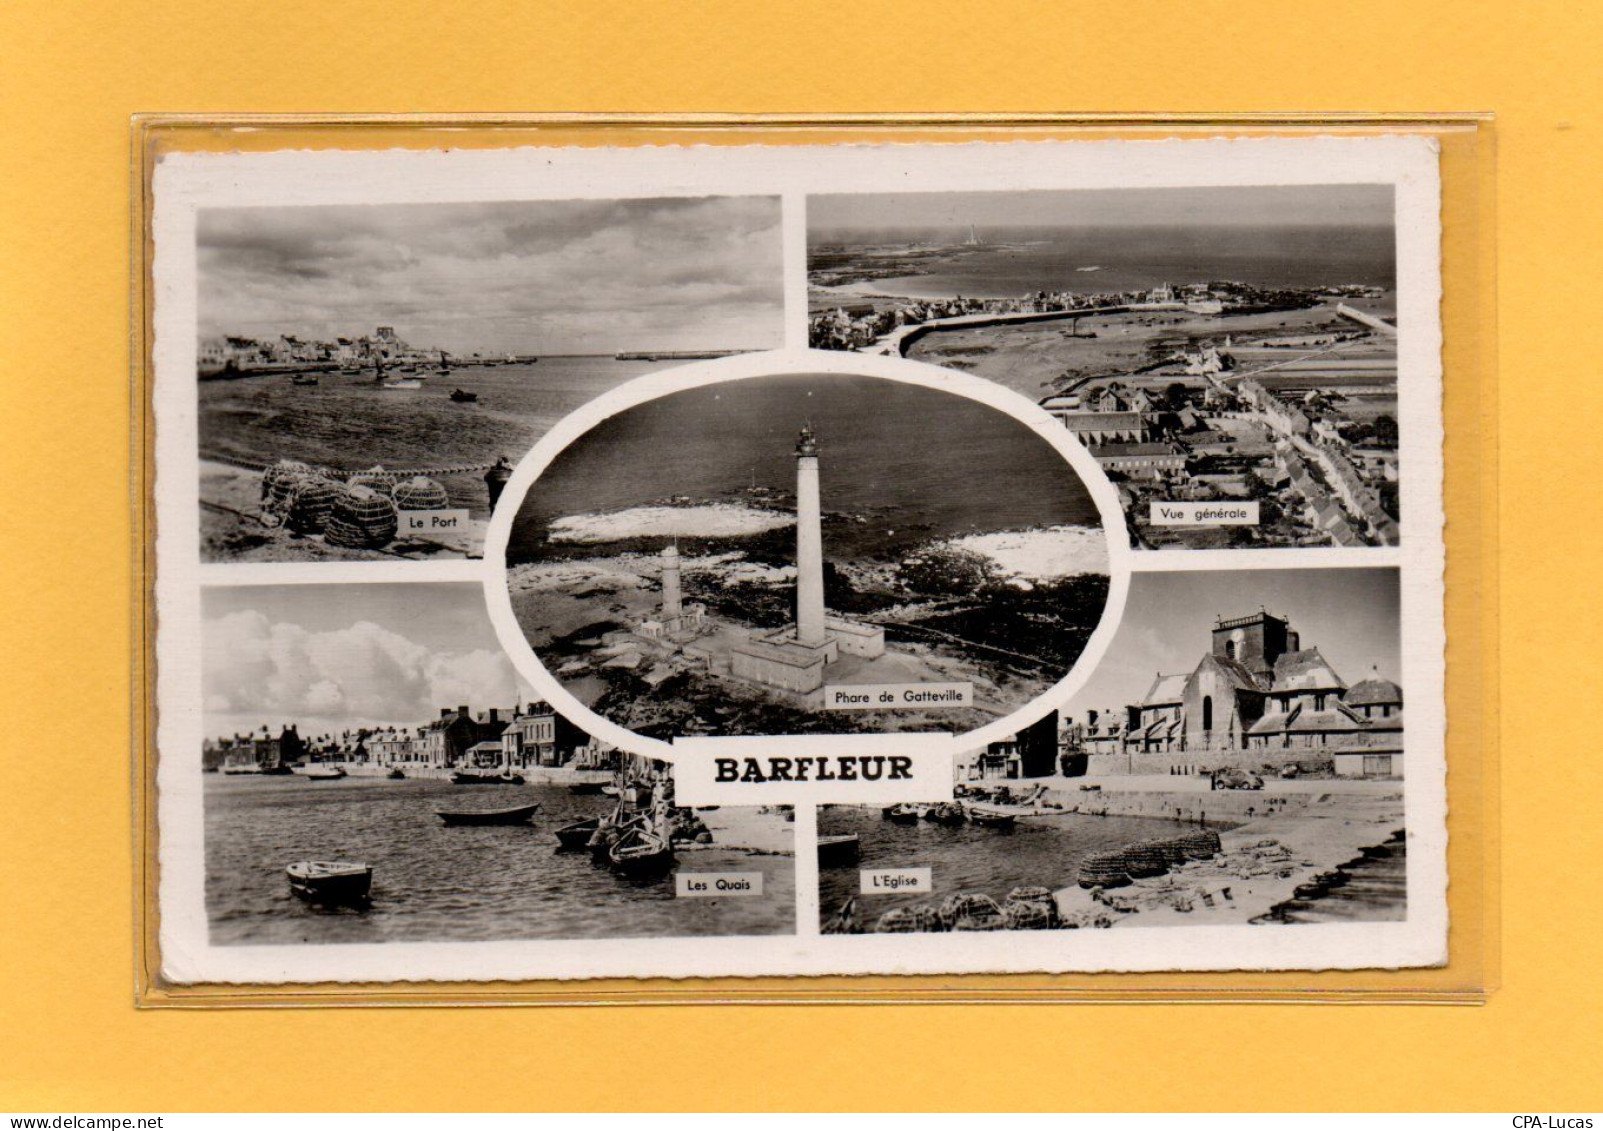 (15/05/24) 50-CPSM BARFLEUR - Barfleur